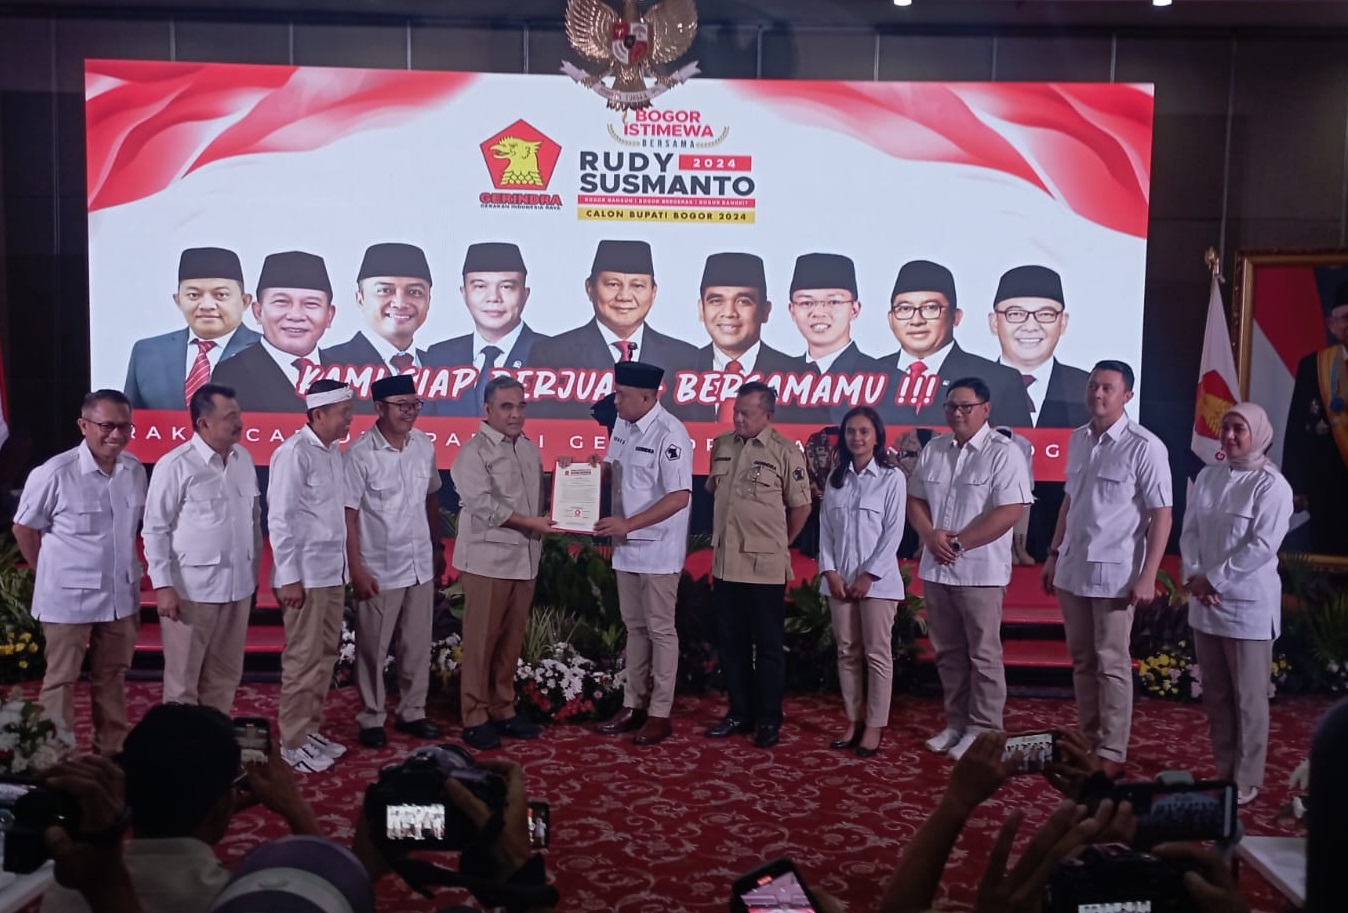 Perlahan tapi pasti elektabilitas Rudy Susmanto merangkak naik berdasarkan hasil survei dari LS - Vinus untuk Pilkada di Kabupaten Bogor.